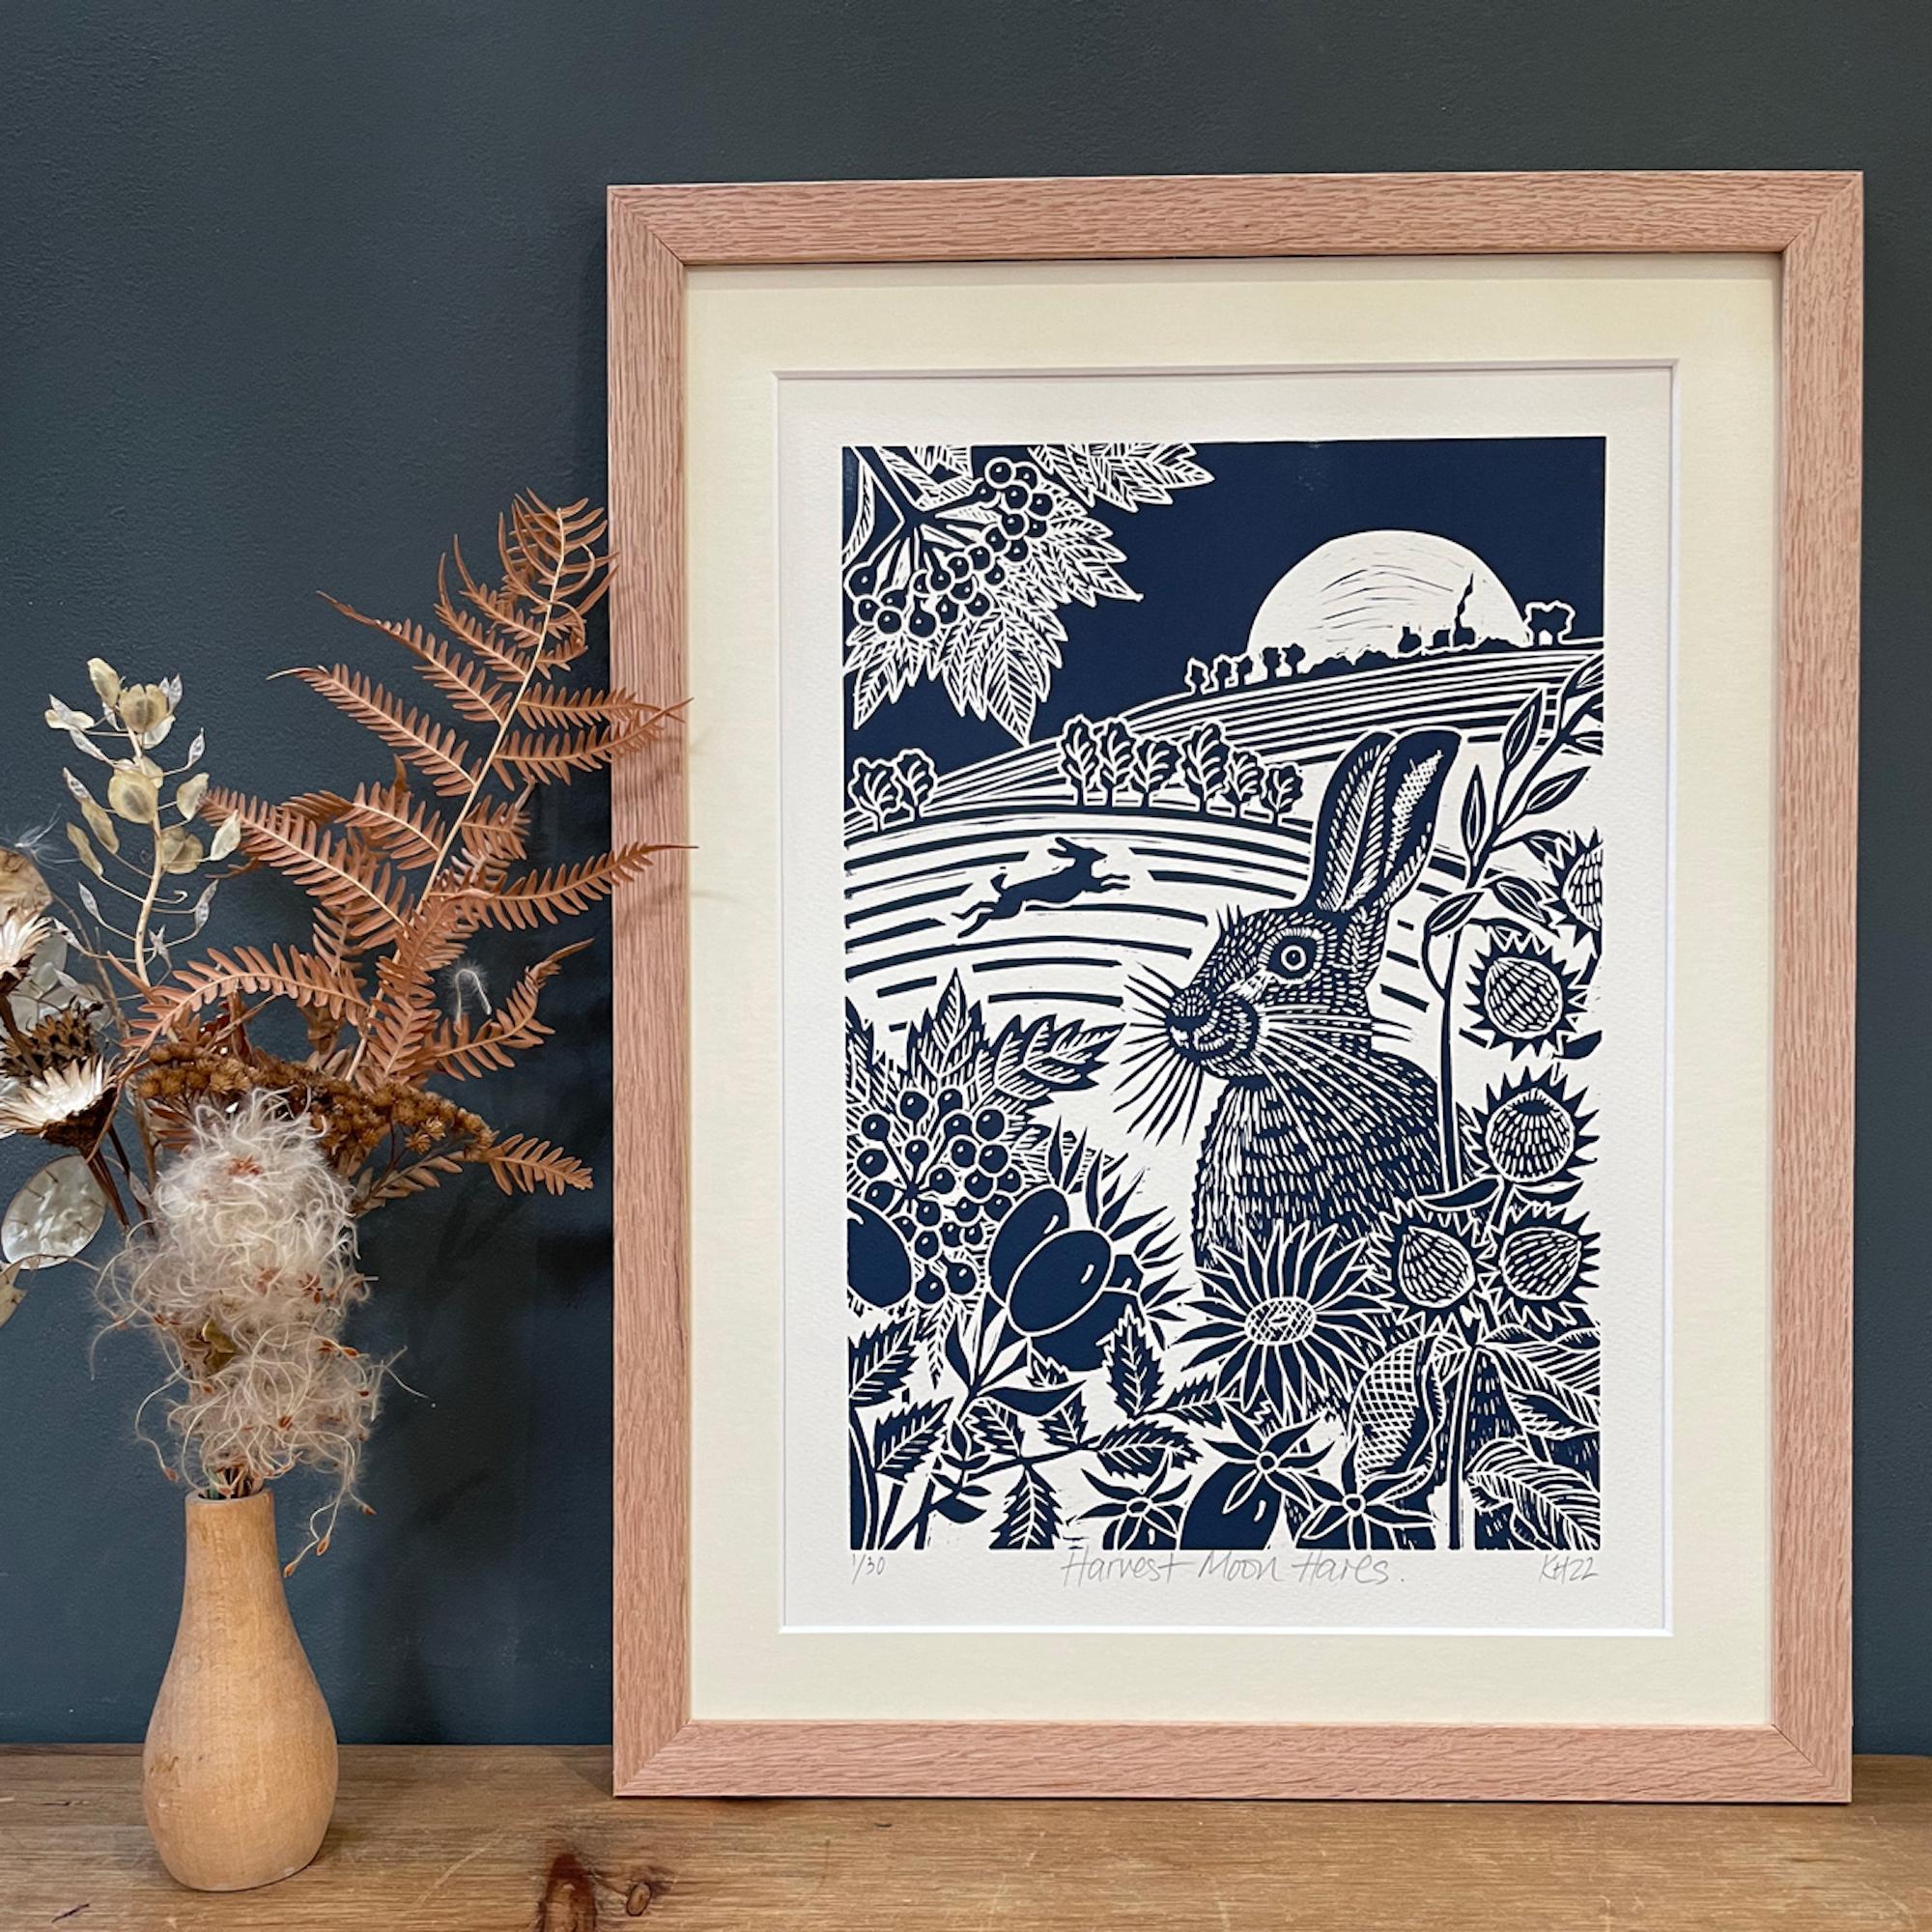 Harvest Moon Hares, Tierkunst, minimalistische Kunstwerke, Linolschnittdruck, Hare-Kunst – Print von Kate Heiss